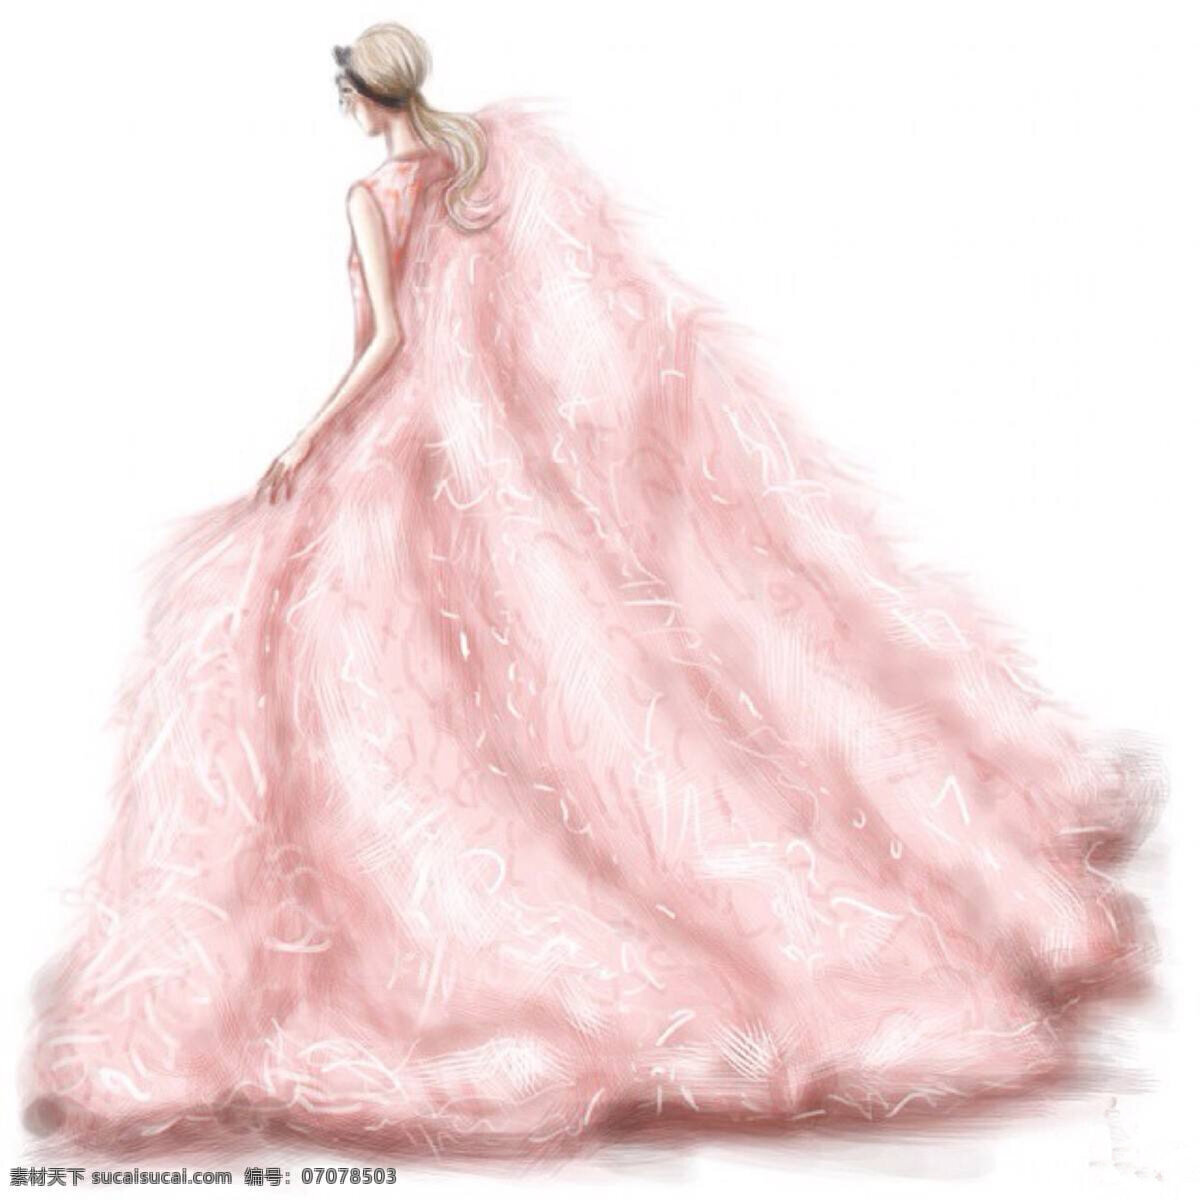 粉色婚纱设计 欧式 婚纱 大气 手绘 简约 现代